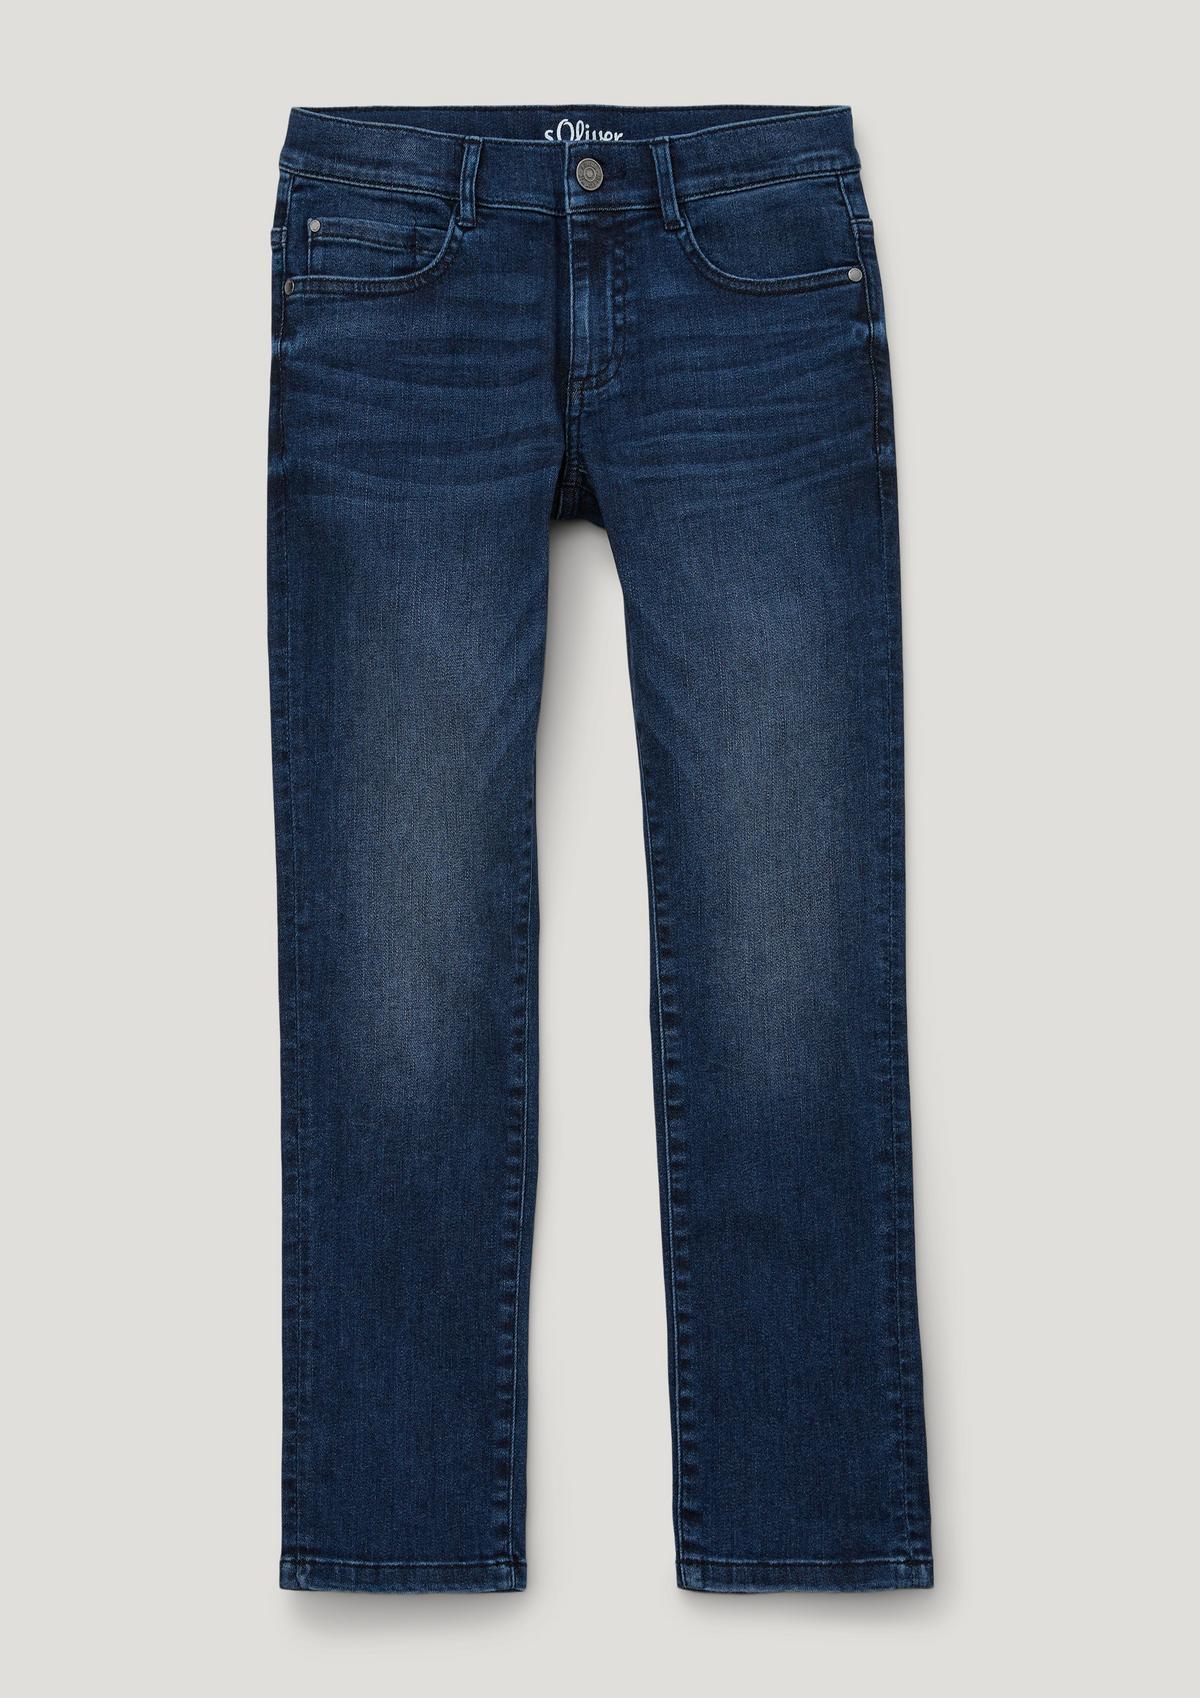 s.Oliver Seattle: Width-adjustable jeans